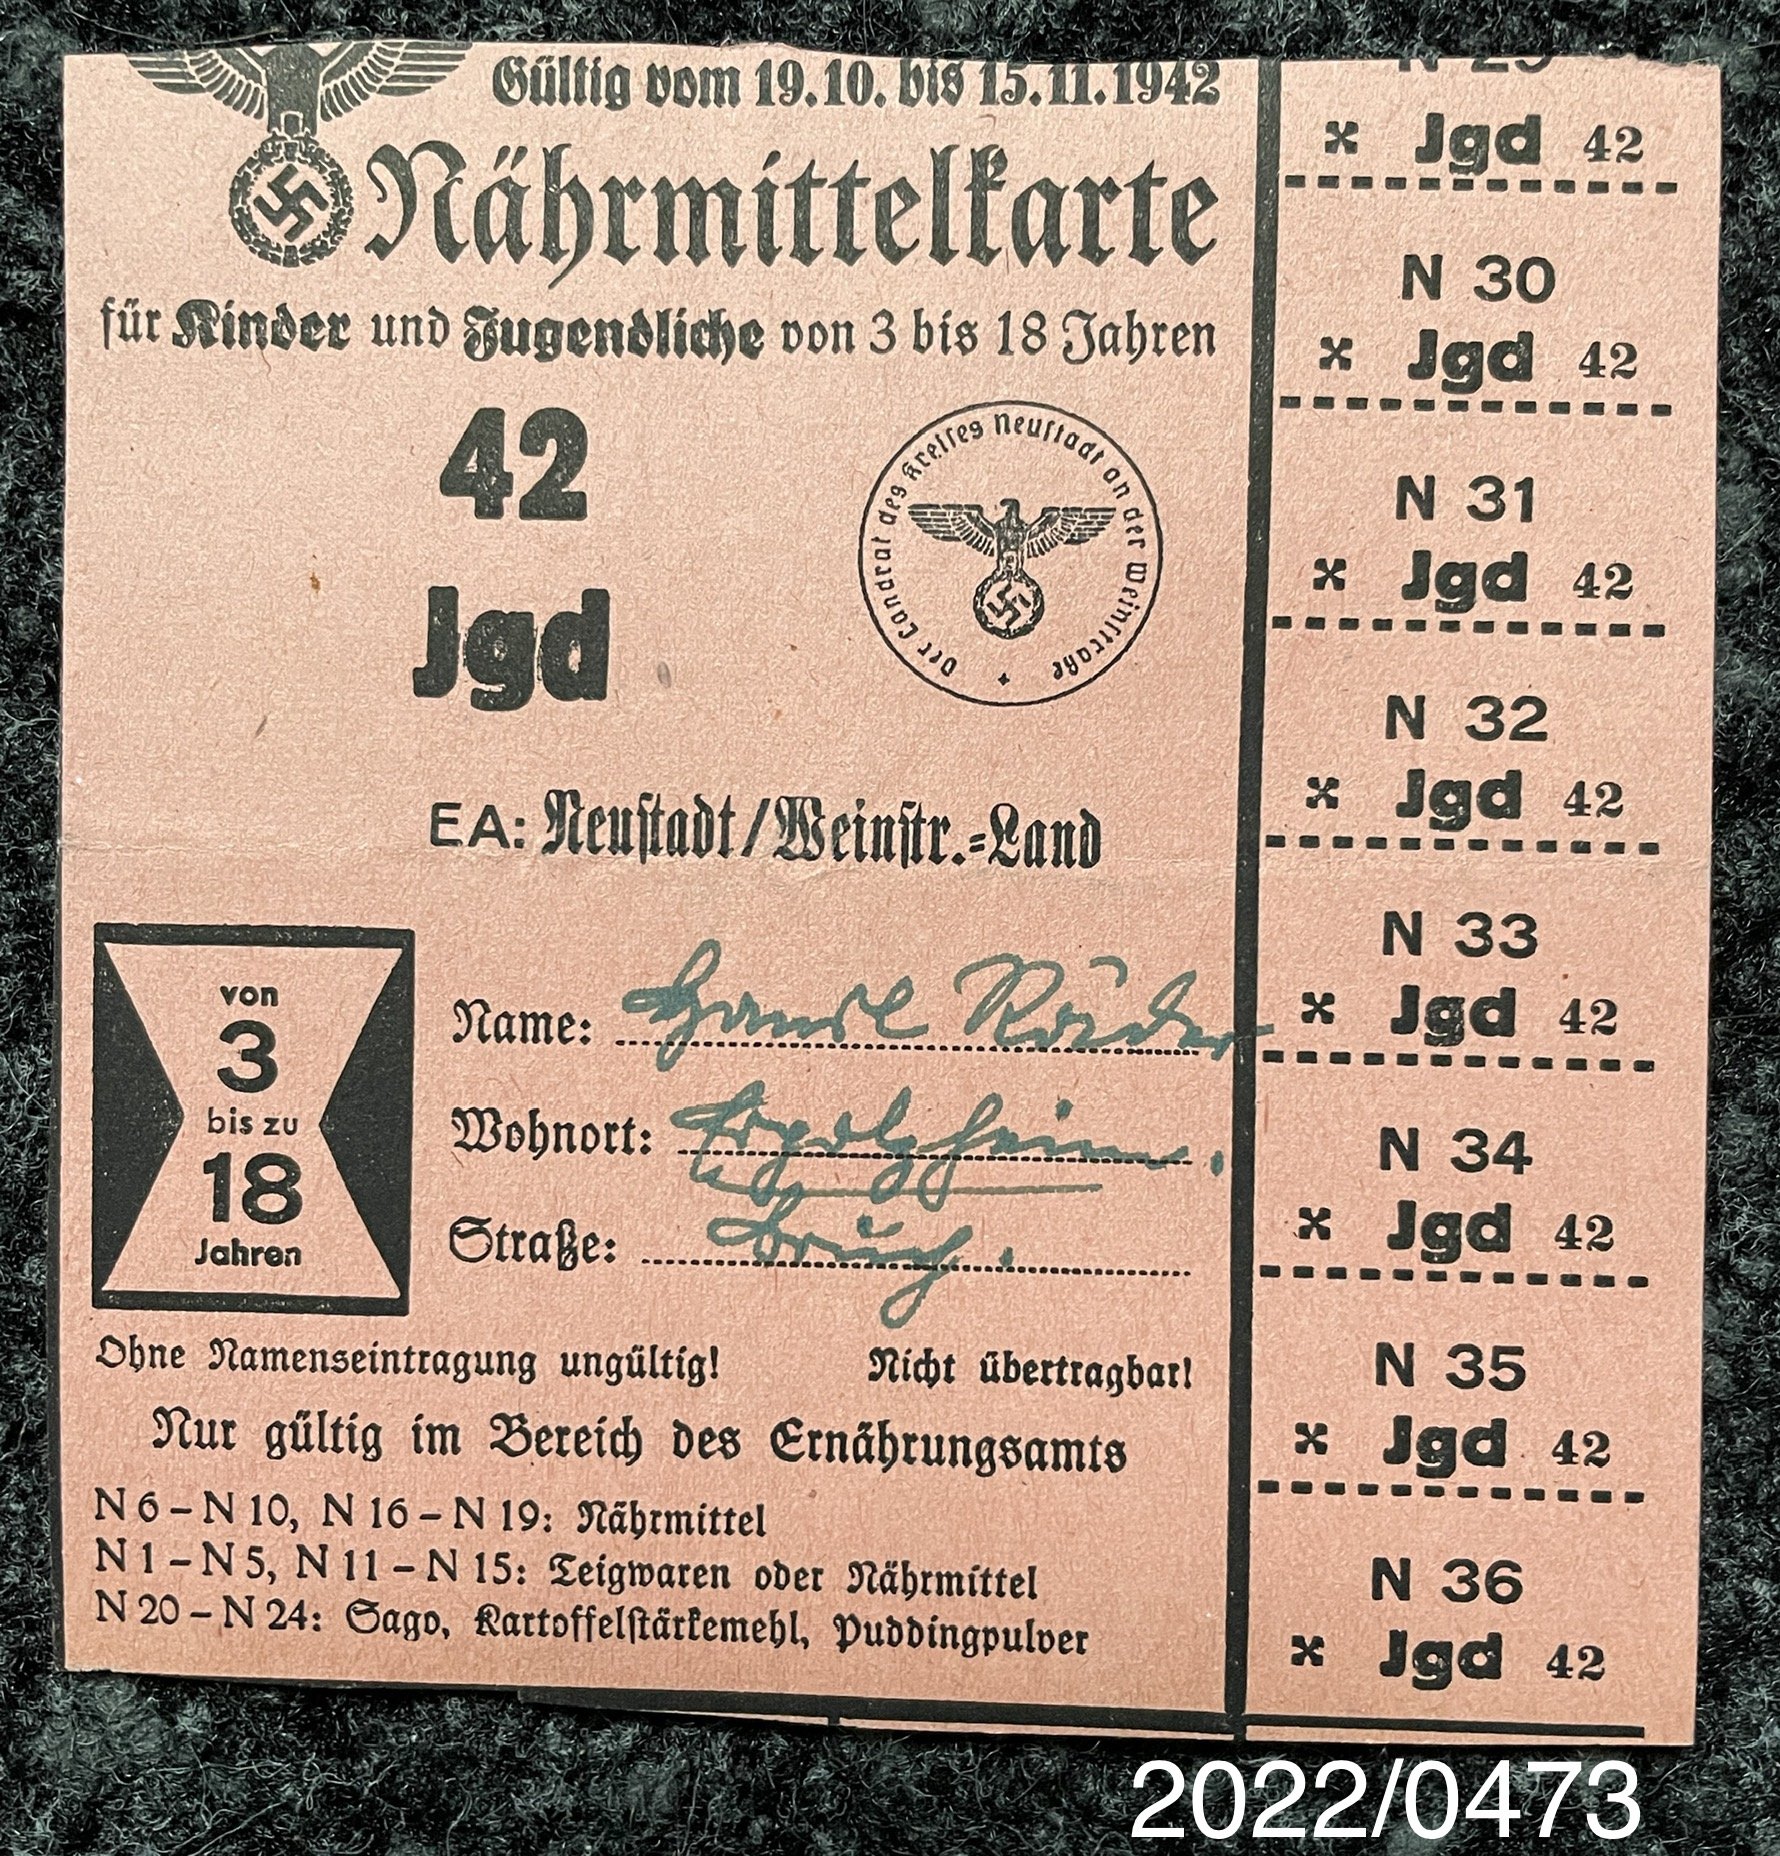 Nährmittelkarte Jgd 1942 (Stadtmuseum Bad Dürkheim im Kulturzentrum Haus Catoir CC BY-NC-SA)